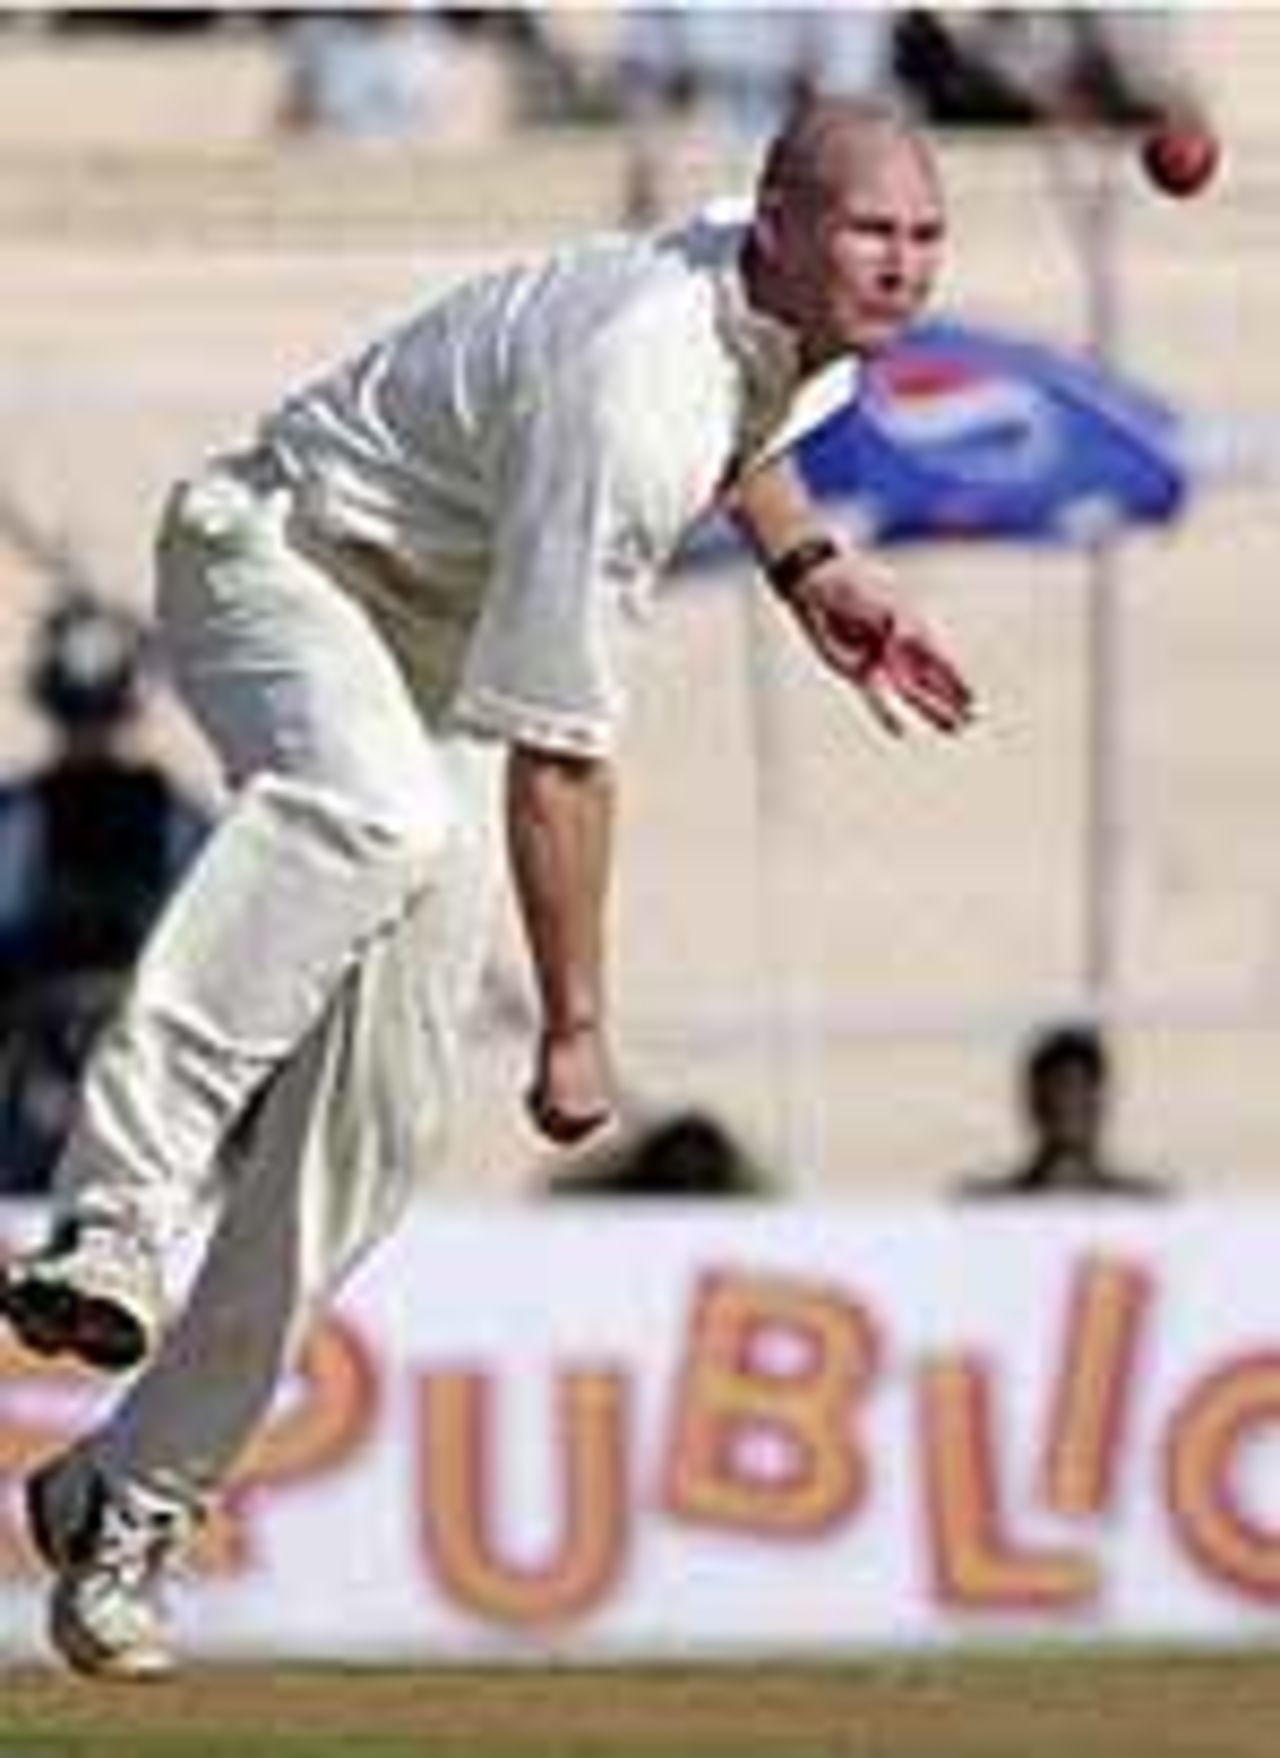 Taken on the 2001 England tour of India